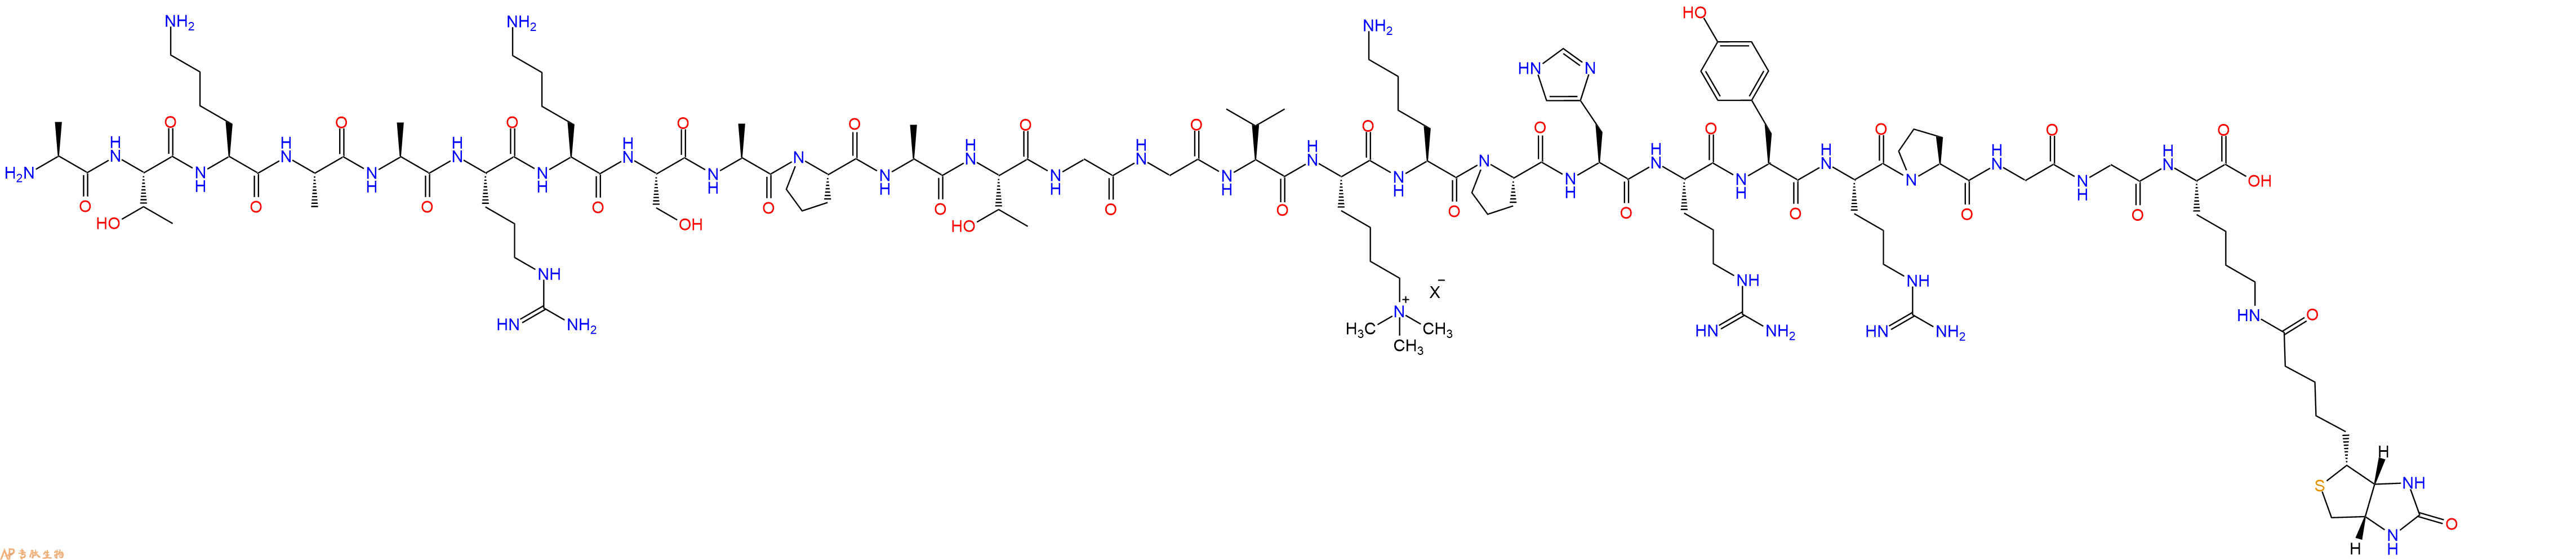 专肽生物产品组蛋白肽段[Lys(Me3)36]-Histone H3(21-44)-GK(Biotin)